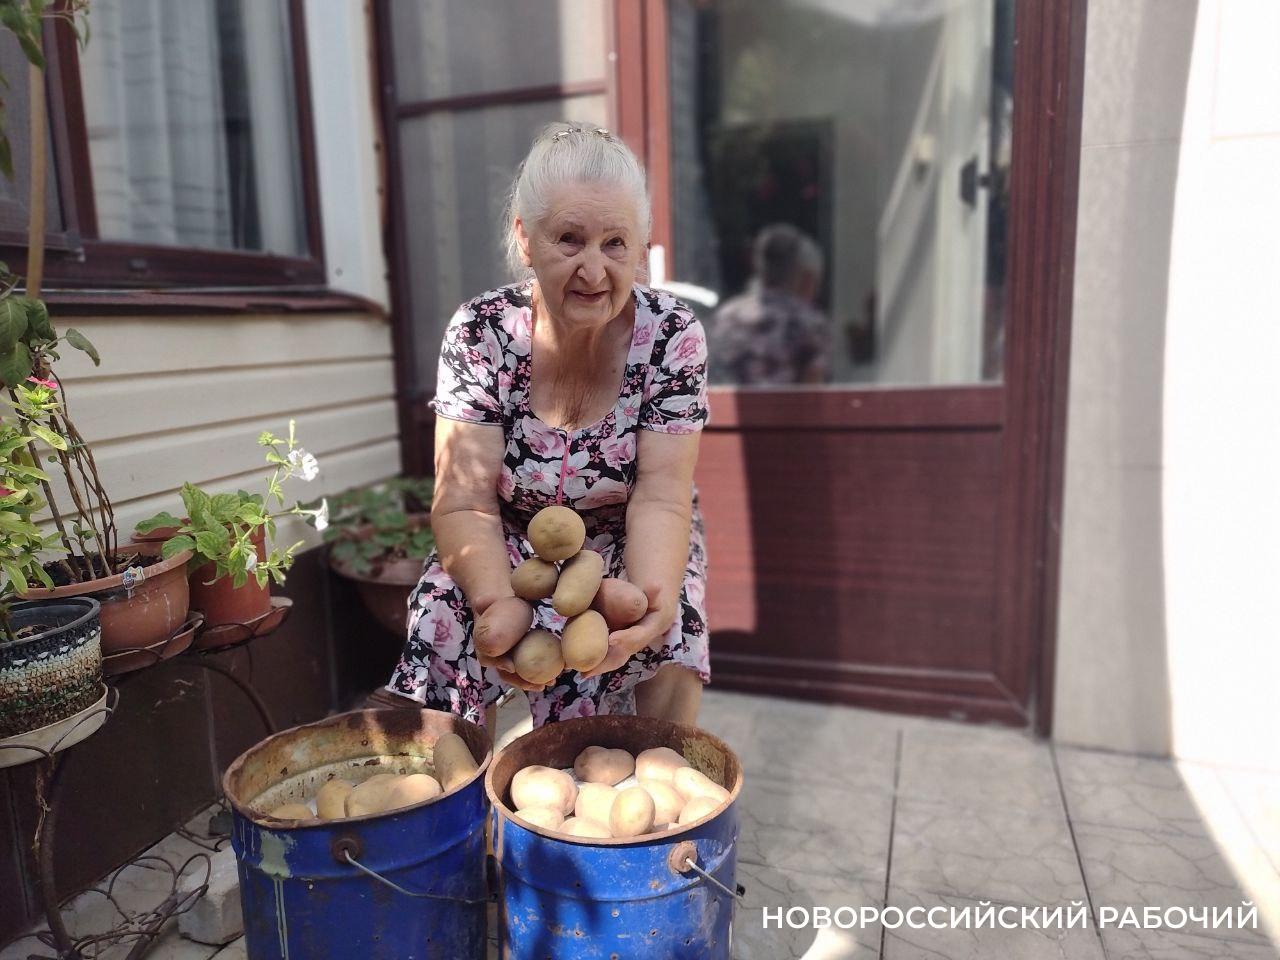 Как посадить ведро картошки, а выкопать 10. Пенсионерка из Новороссийска делится секретами